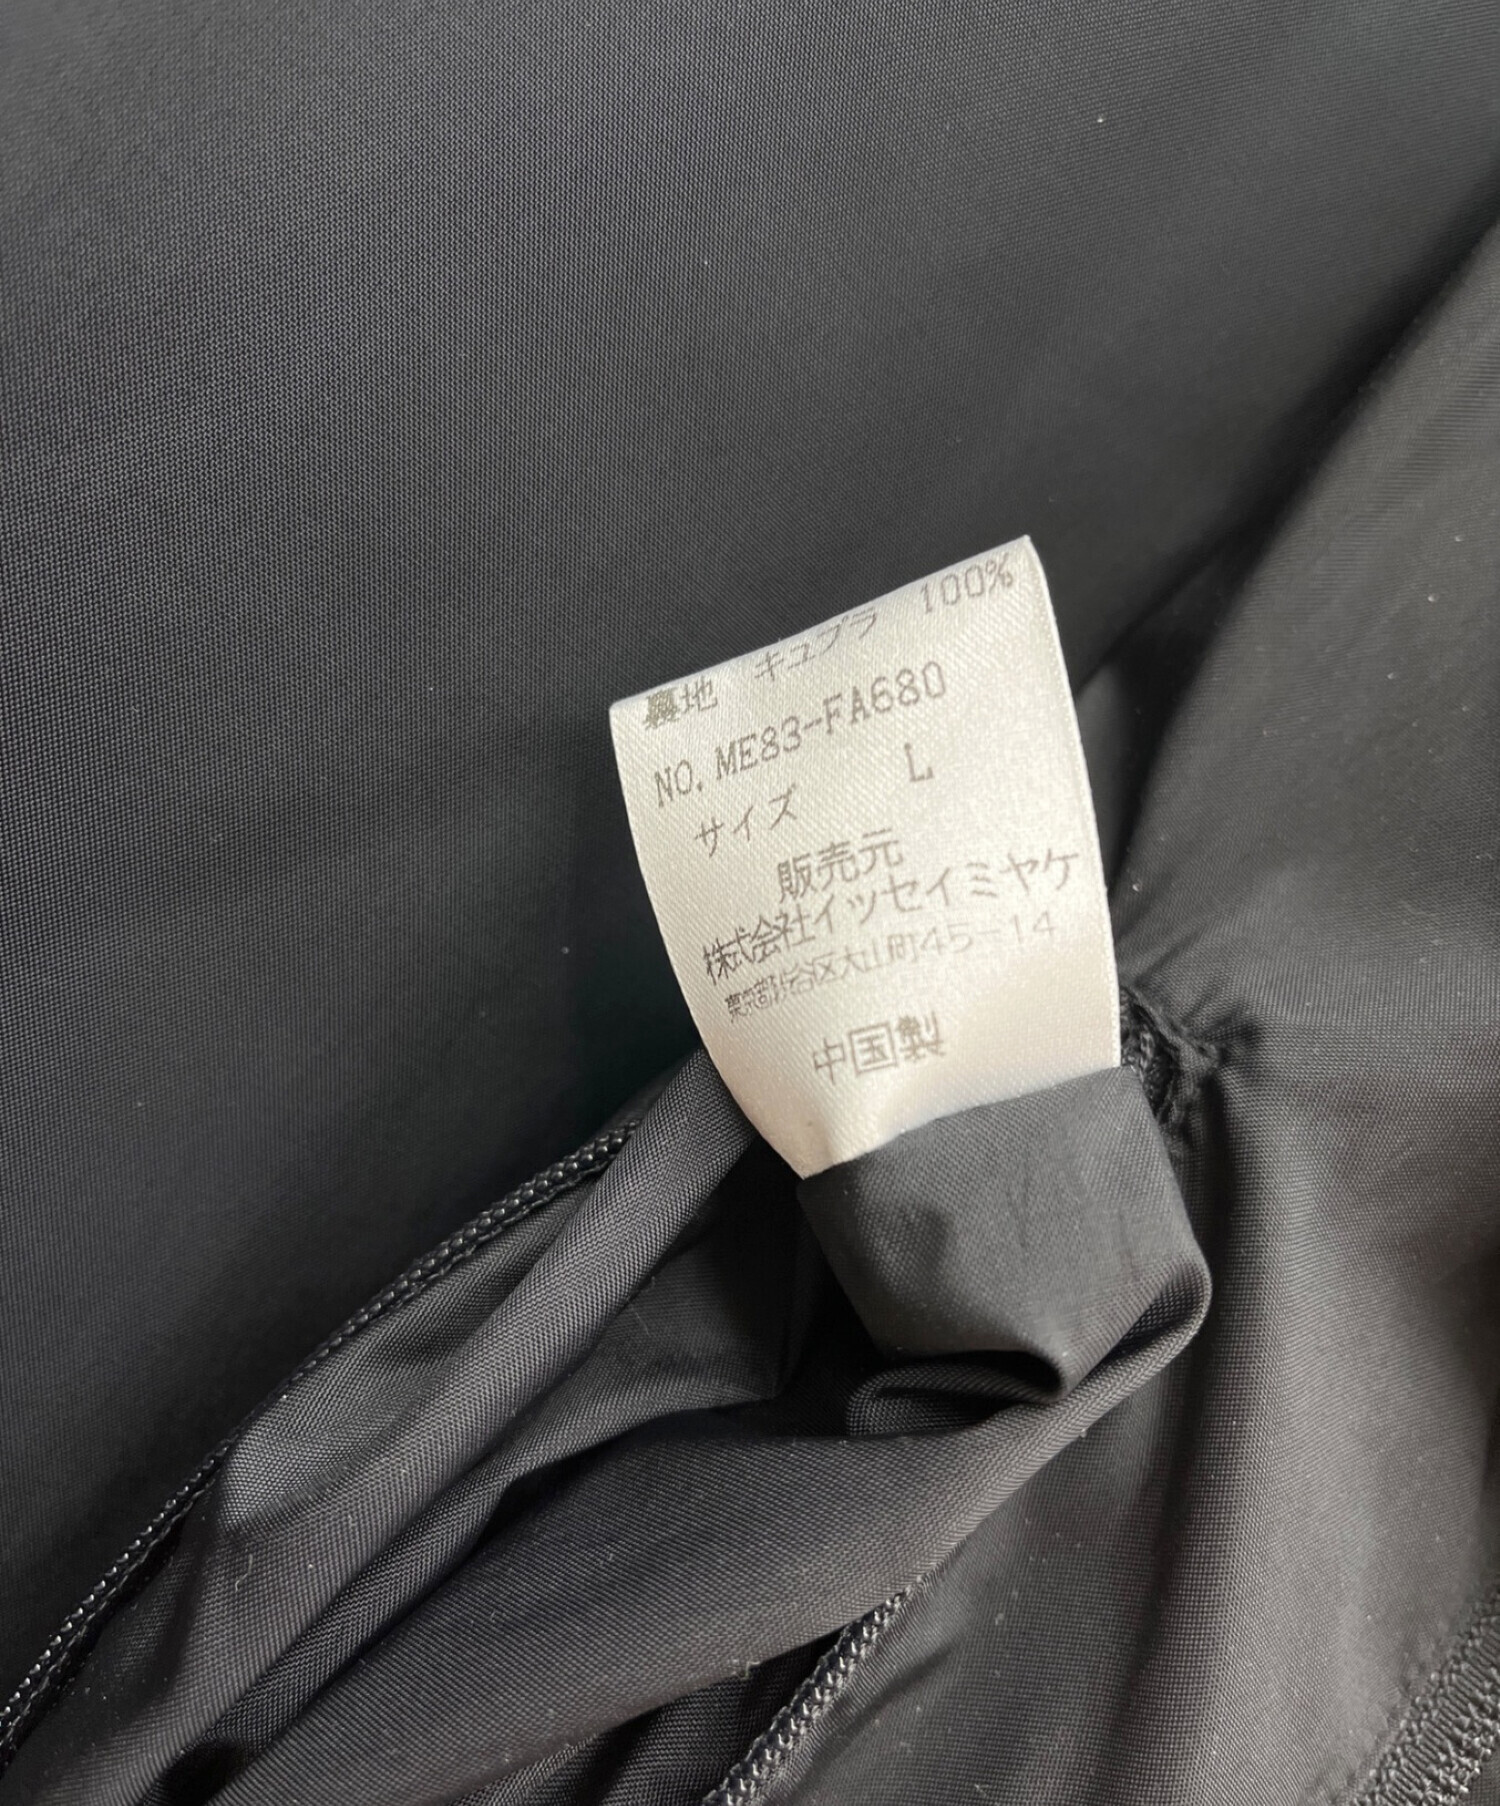 ISSEY MIYAKE MEN (イッセイミヤケメン) thinsulate (シンサレート) ロングコート ブラック サイズ:L 未使用品